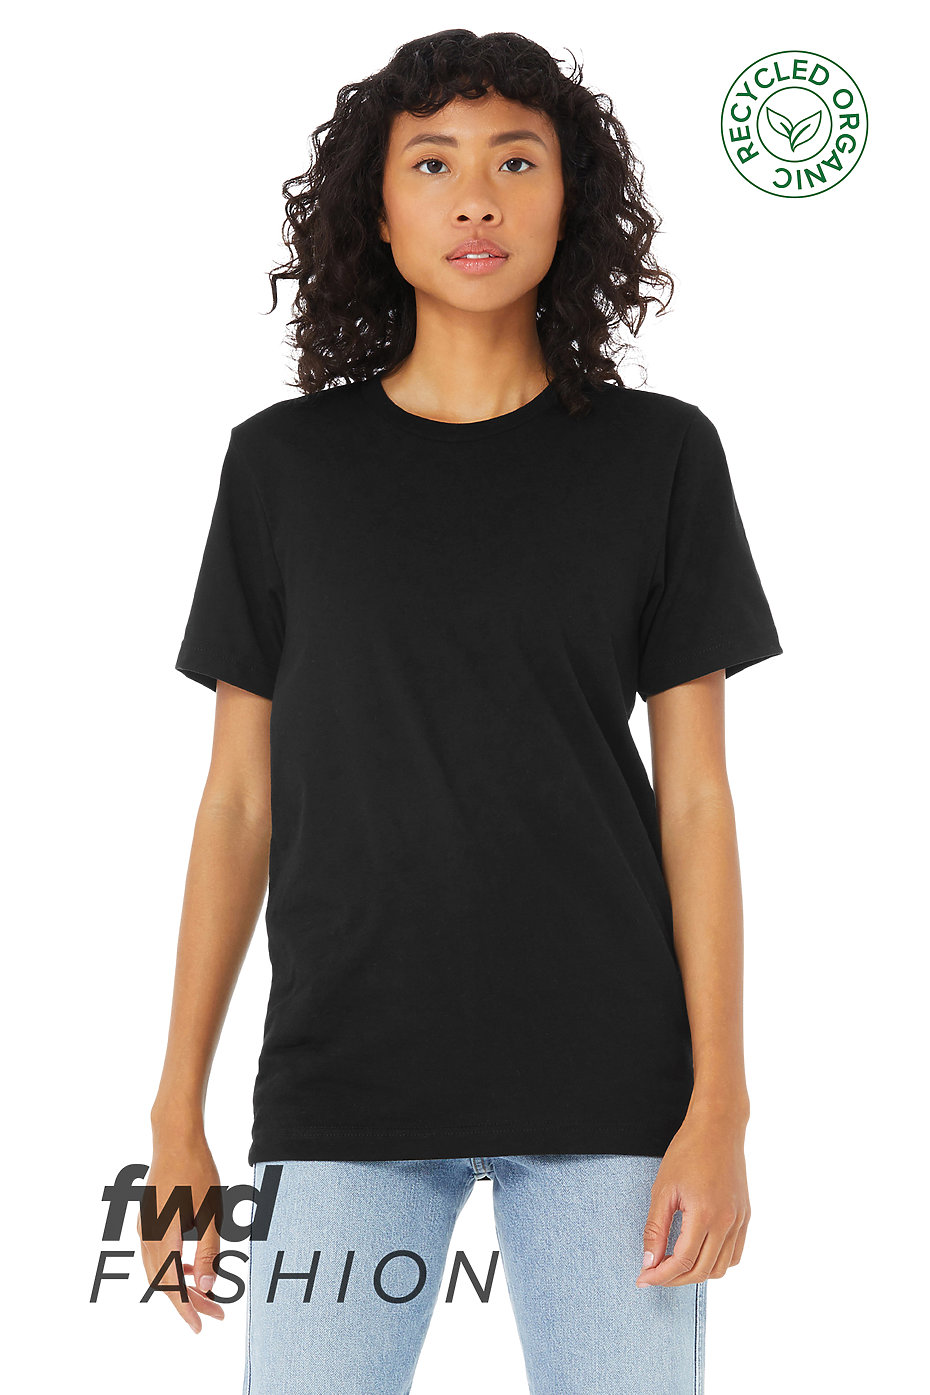 Bella + Canvas 3001C Unisex T-Shirt, Wholesale